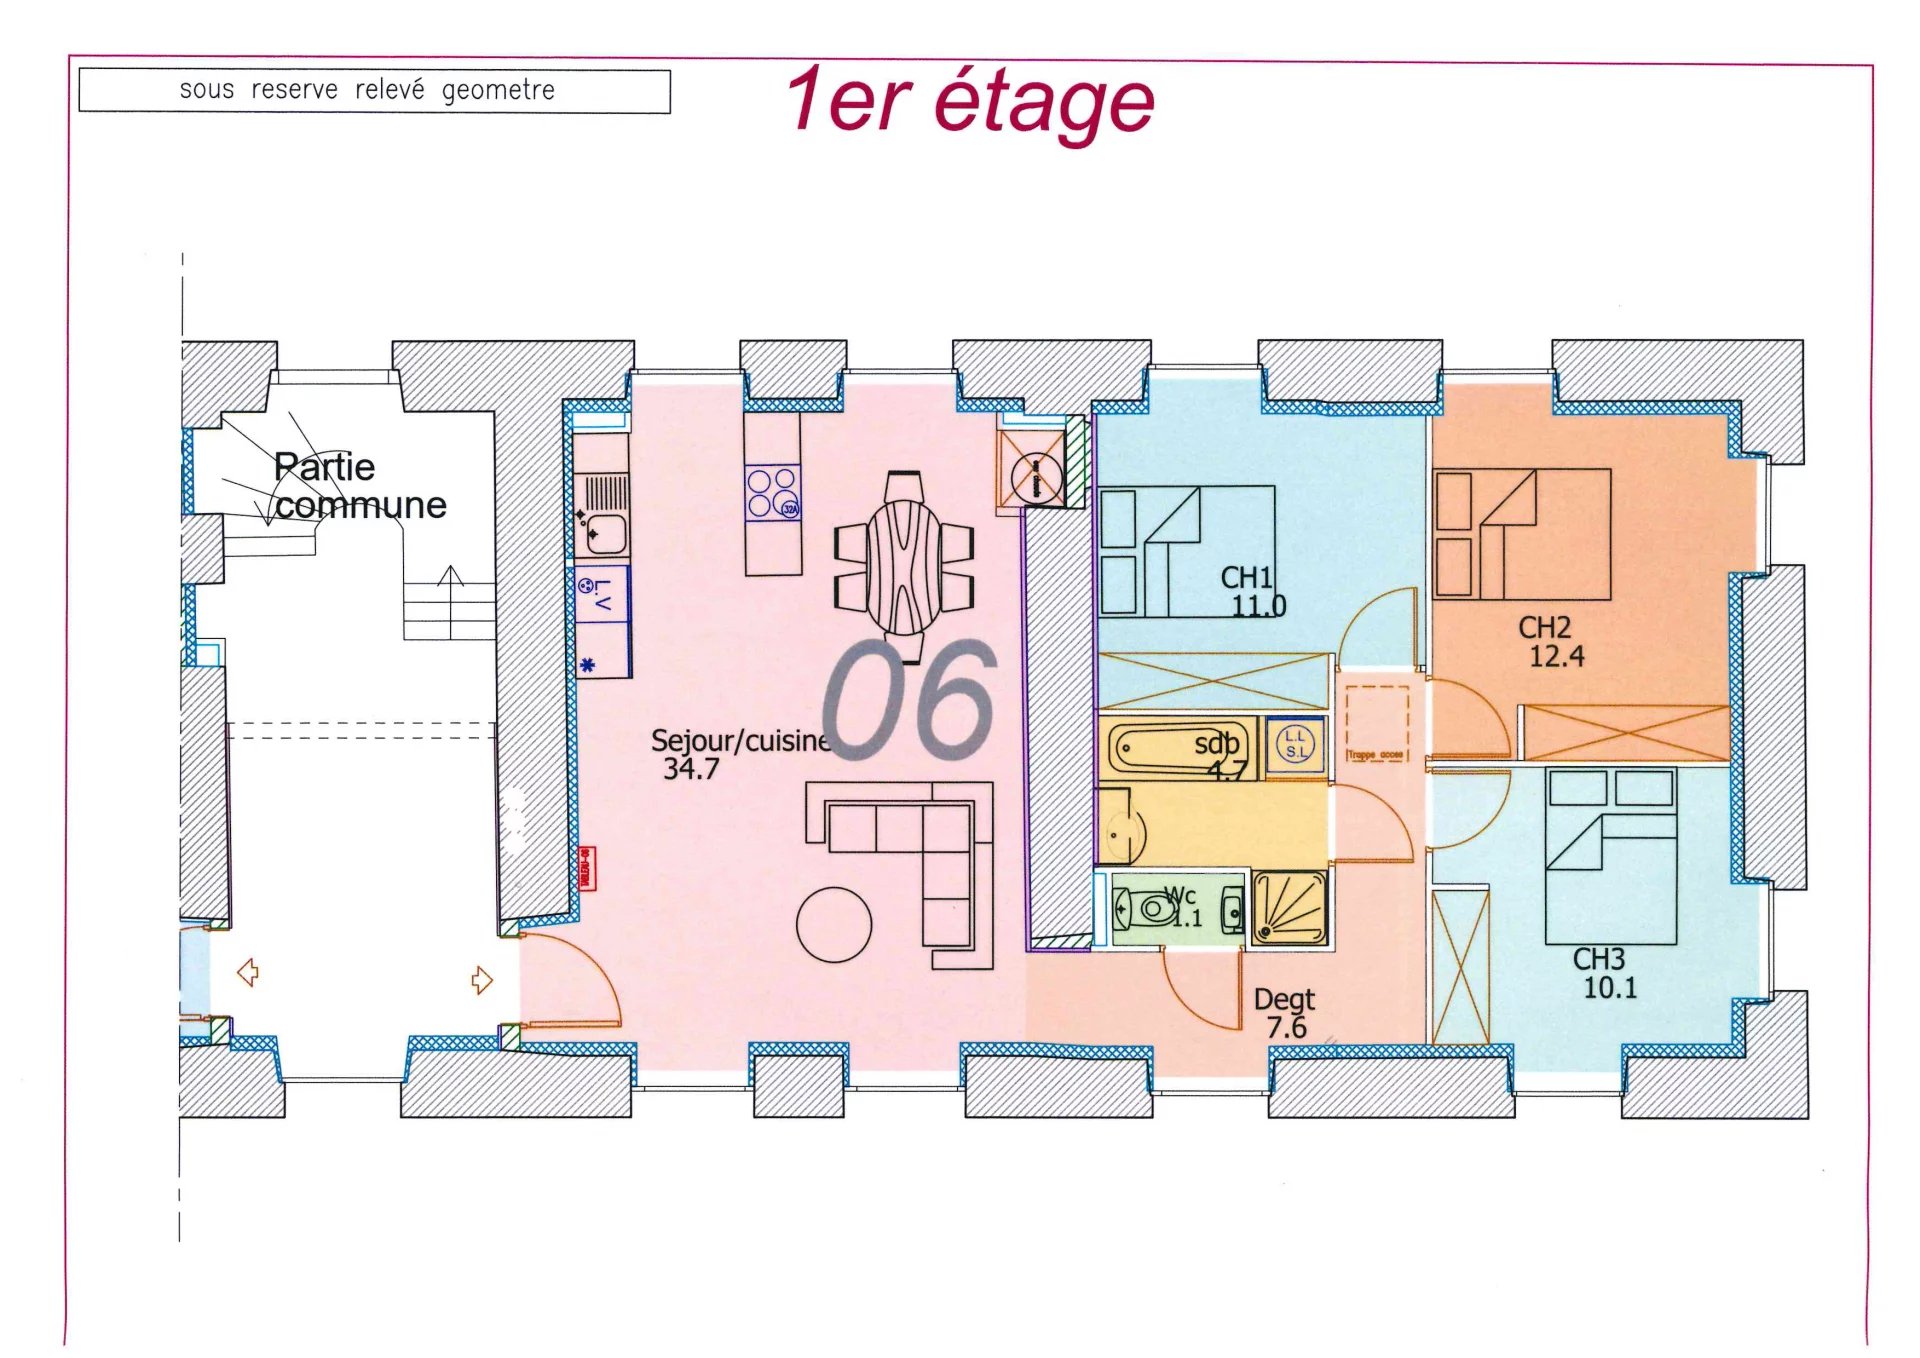 Appartement 4 pièces avec jardin 249 m² et 2 places de parking !